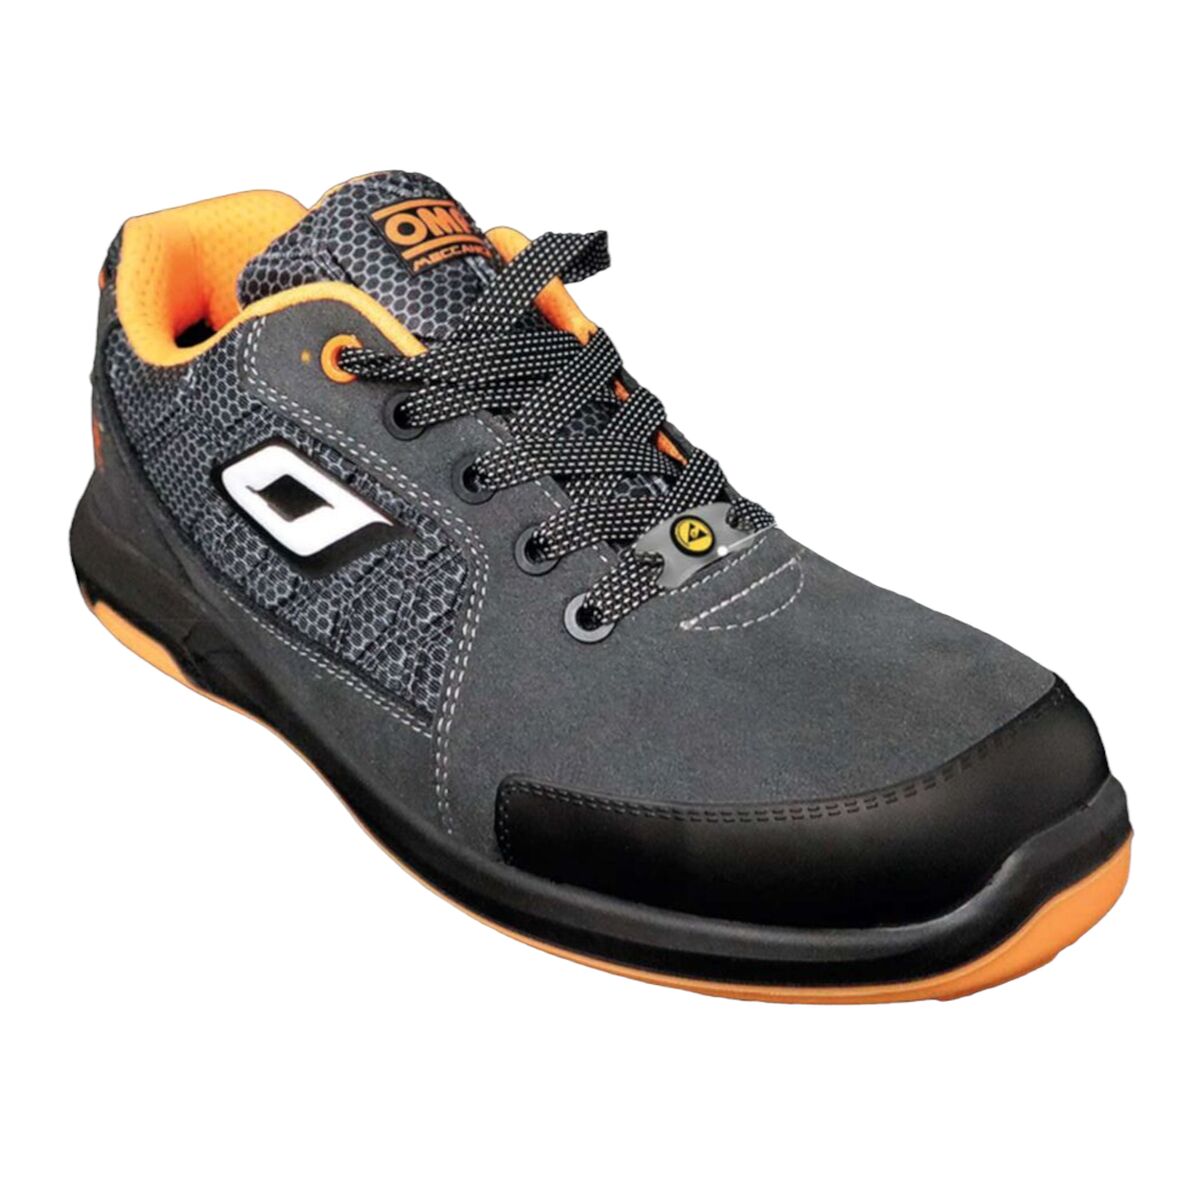 Παπούτσια Ασφαλείας OMP MECCANICA PRO SPORT Πορτοκαλί 36